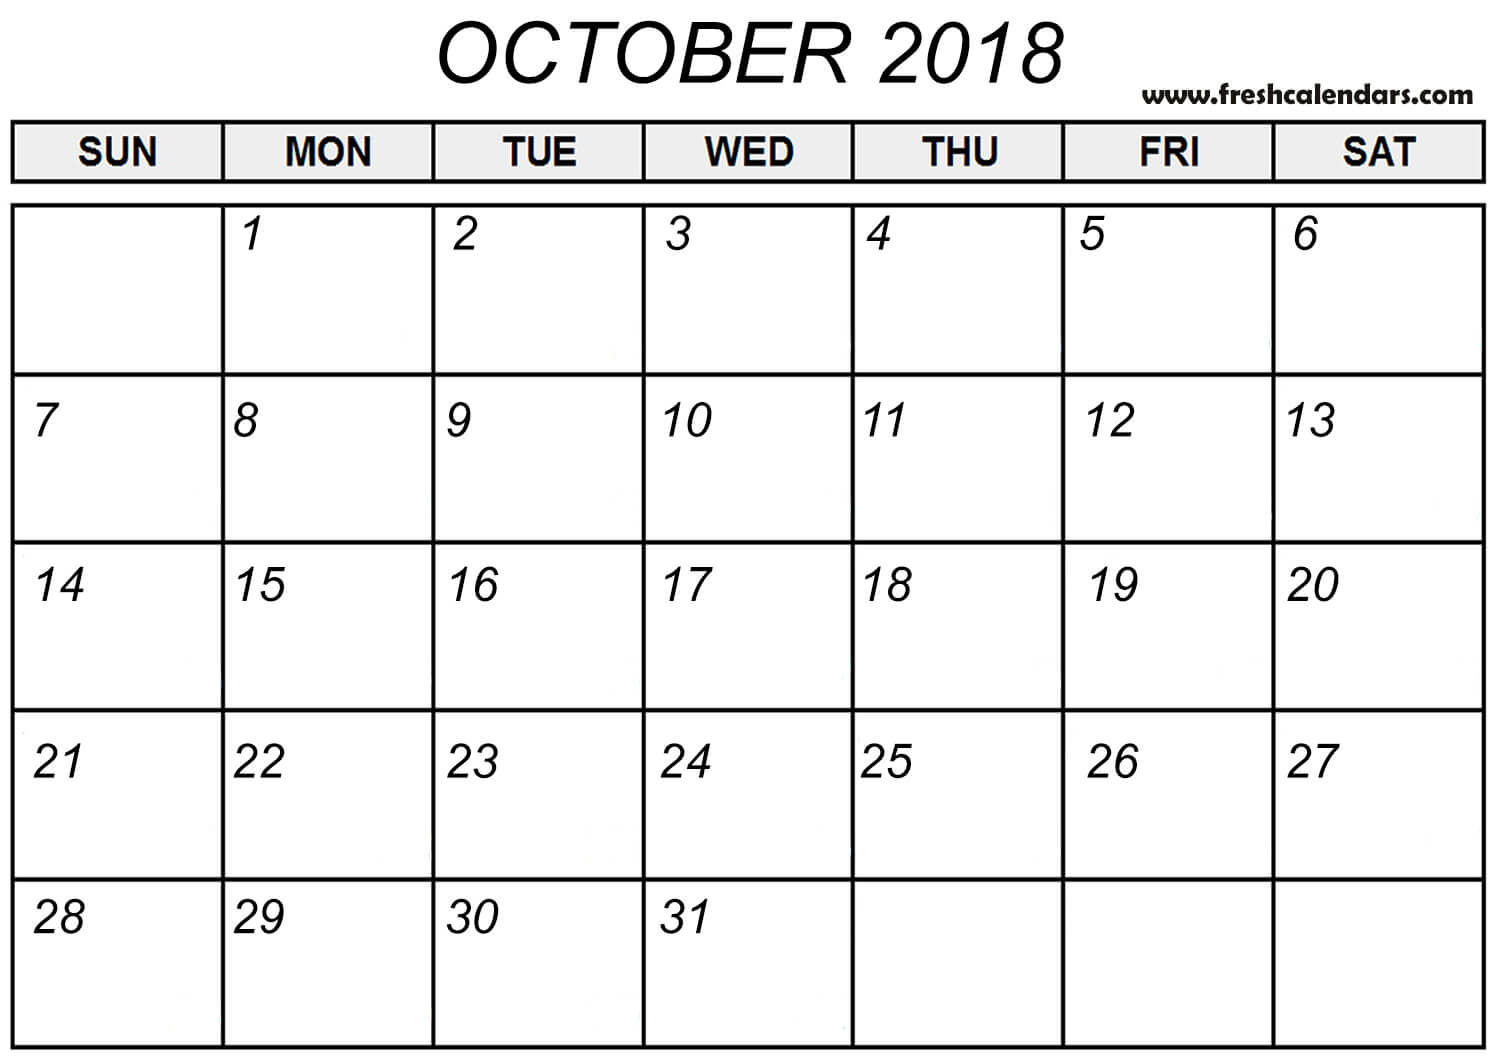 Oct 2018 Calendar